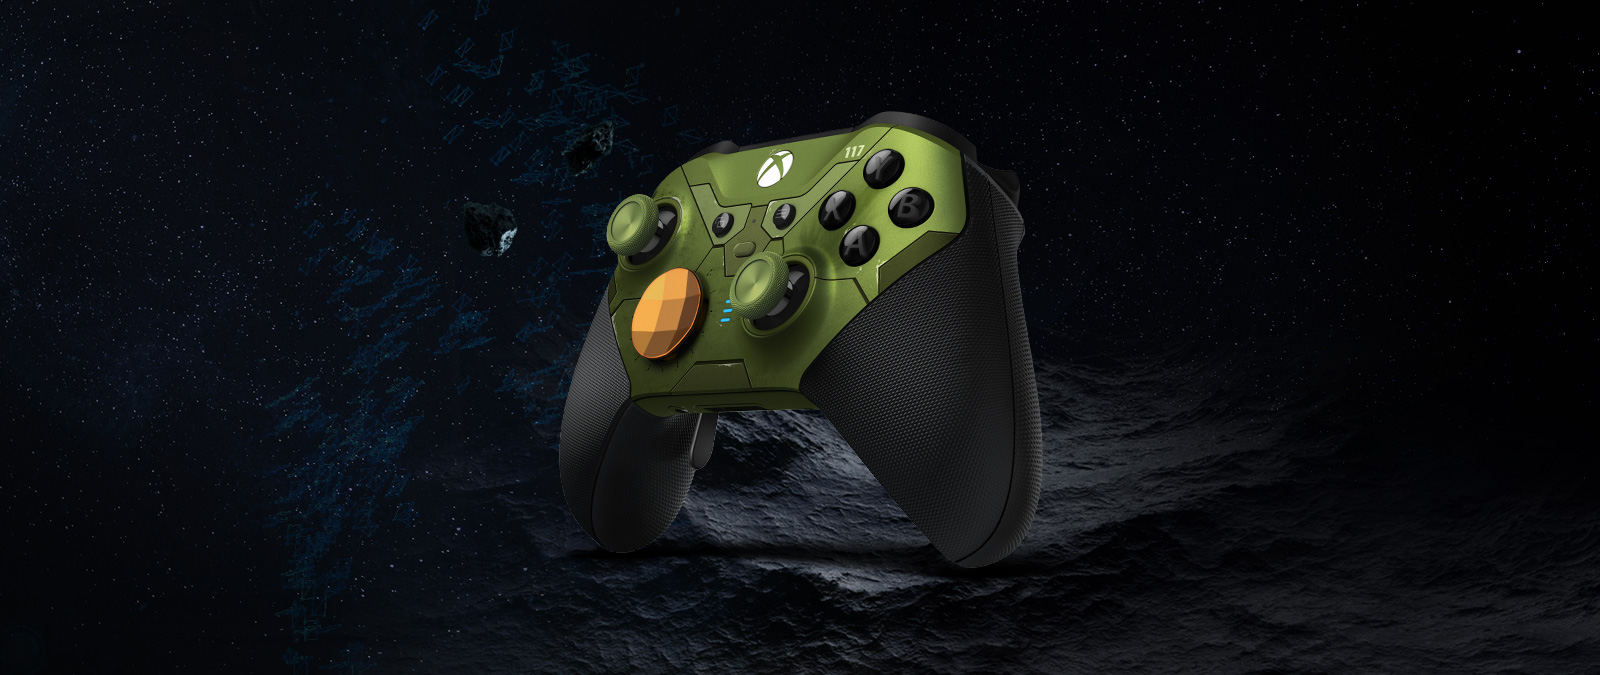 Høyre vinkel på trådløs Xbox Elite-kontroller Series 2 - Halo Infinite Limited Edition flyter i verdensrommet